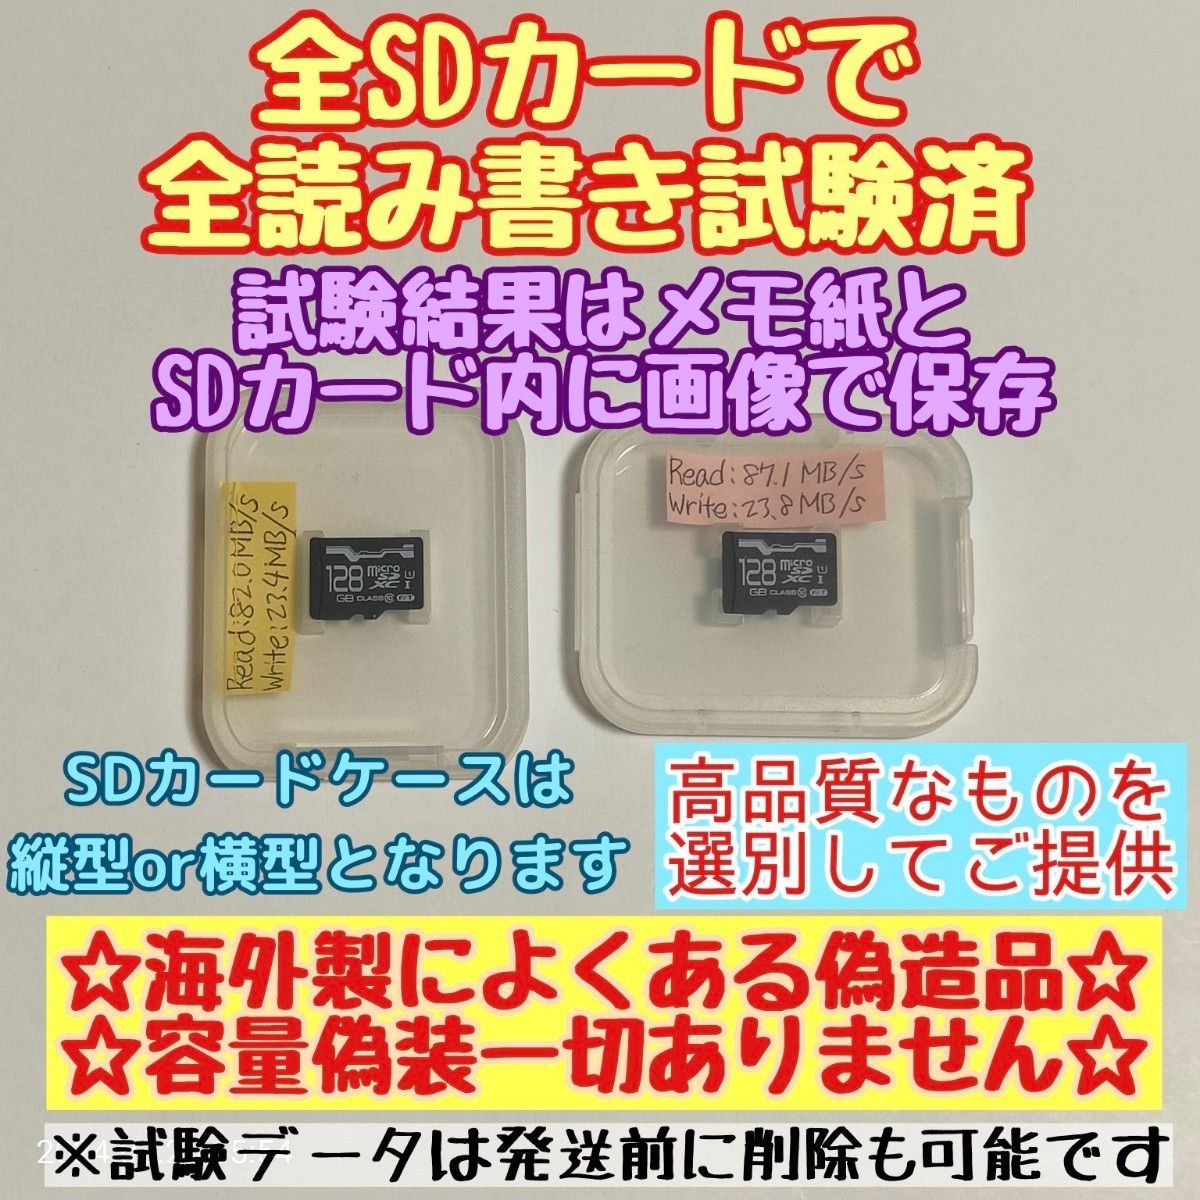 microsd マイクロSD カード 128GB 1枚★優良品選別・相性保証★⑦